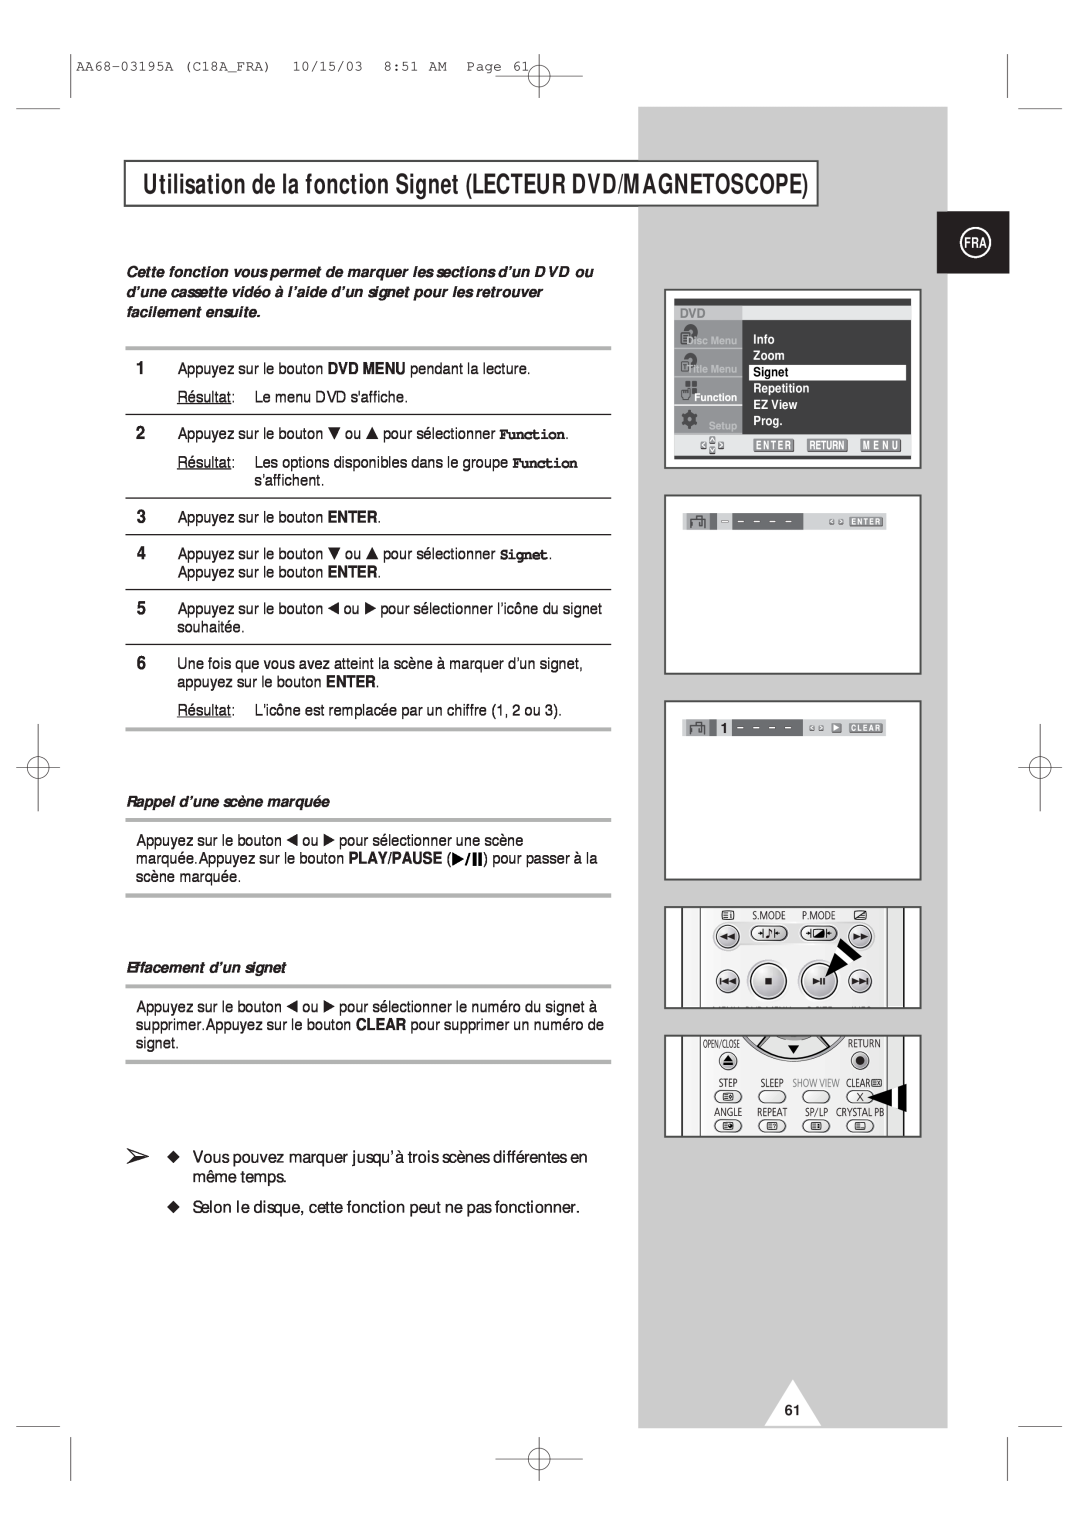 Samsung UW17J11VD5XXEF manual Utilisation de la fonction Signet LECTEUR DVD/MAGNETOSCOPE, Rappel d’une scène marquée 